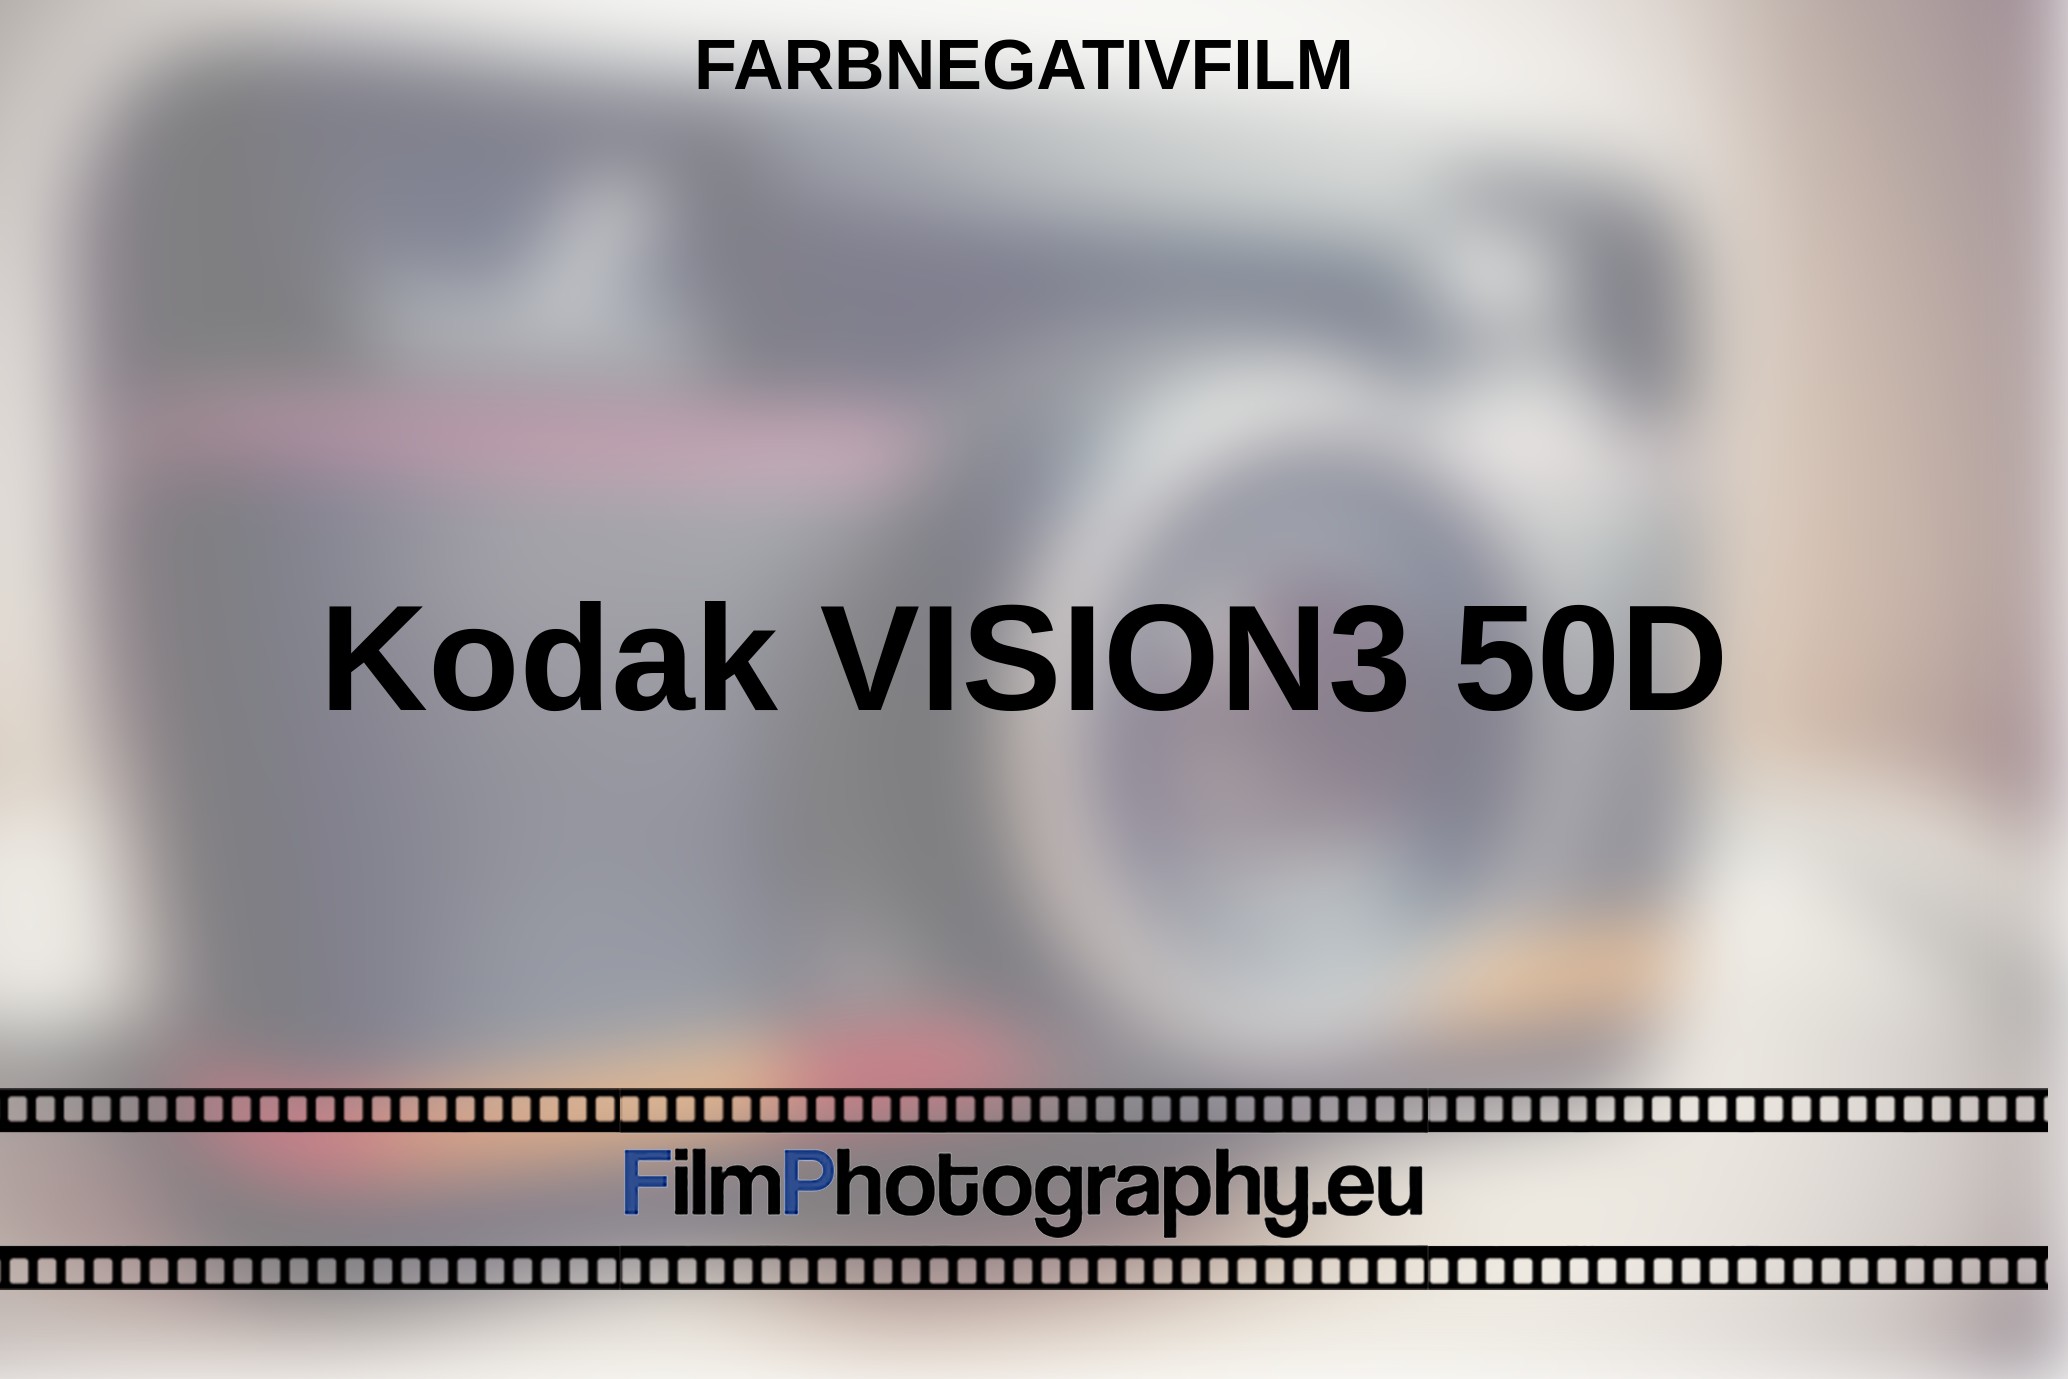 Kodak-VISION3-50D-Farbnegativfilm-bnv.jpg